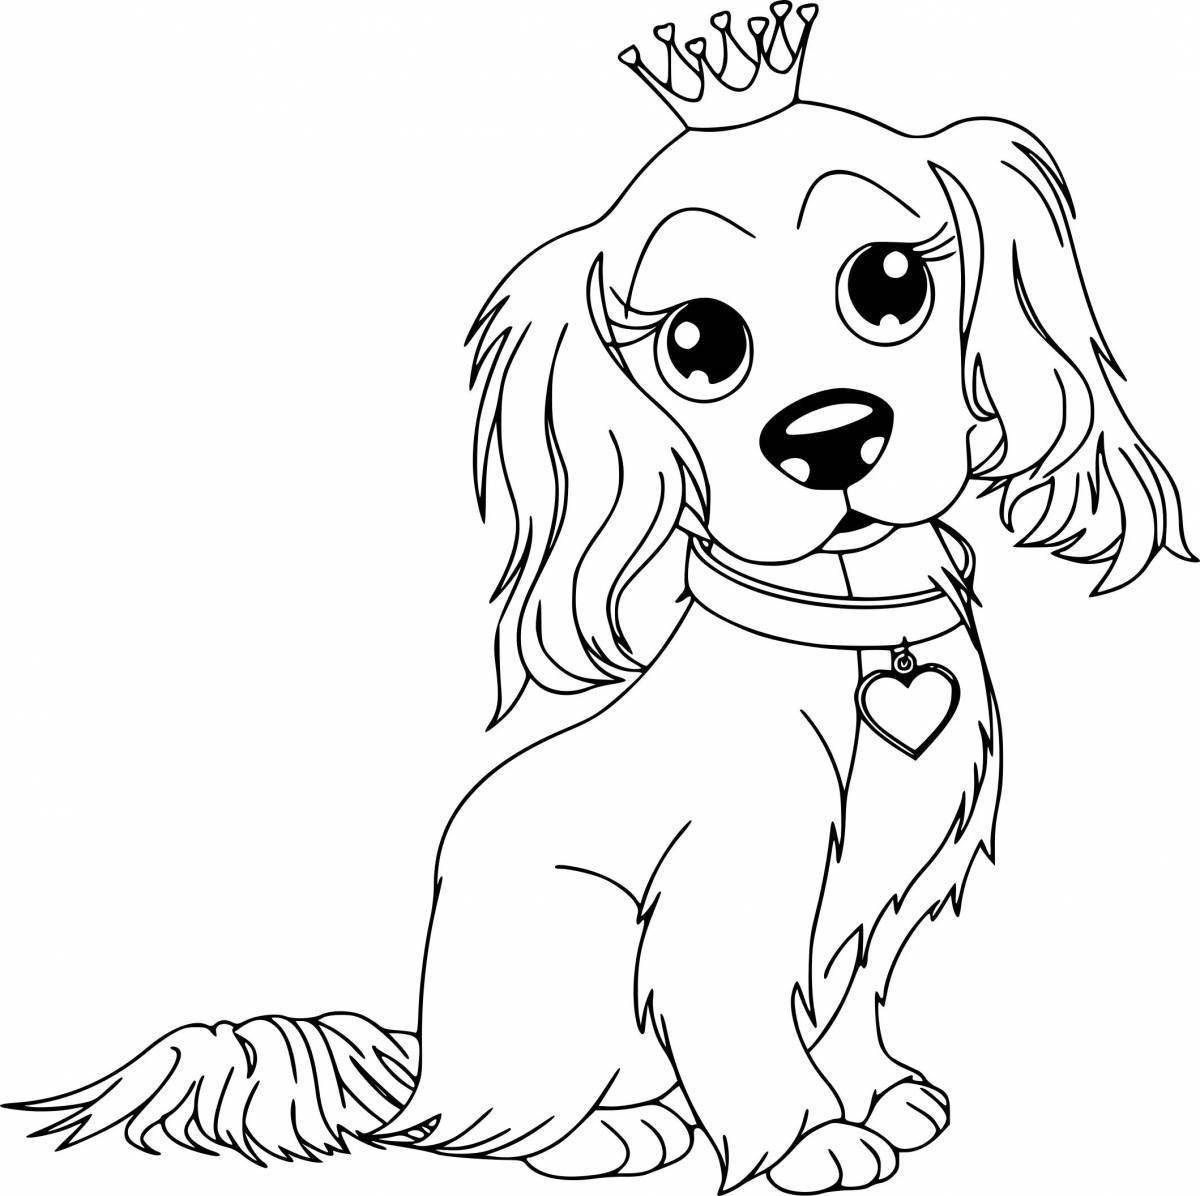 Жирная раскраска рисунок собаки